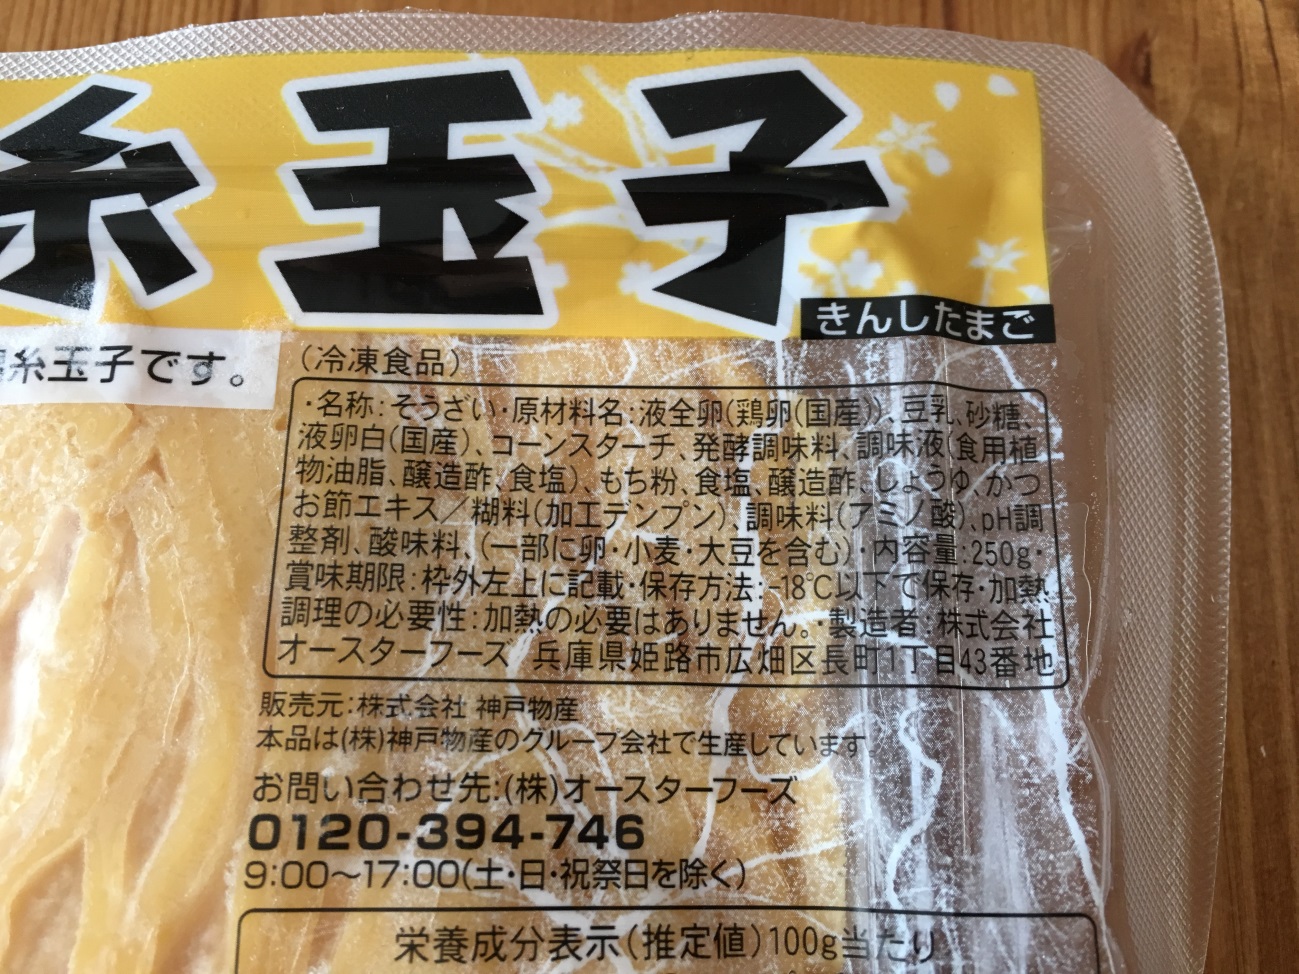 業務スーパーの錦糸玉子の原材料名と製造者名の表記